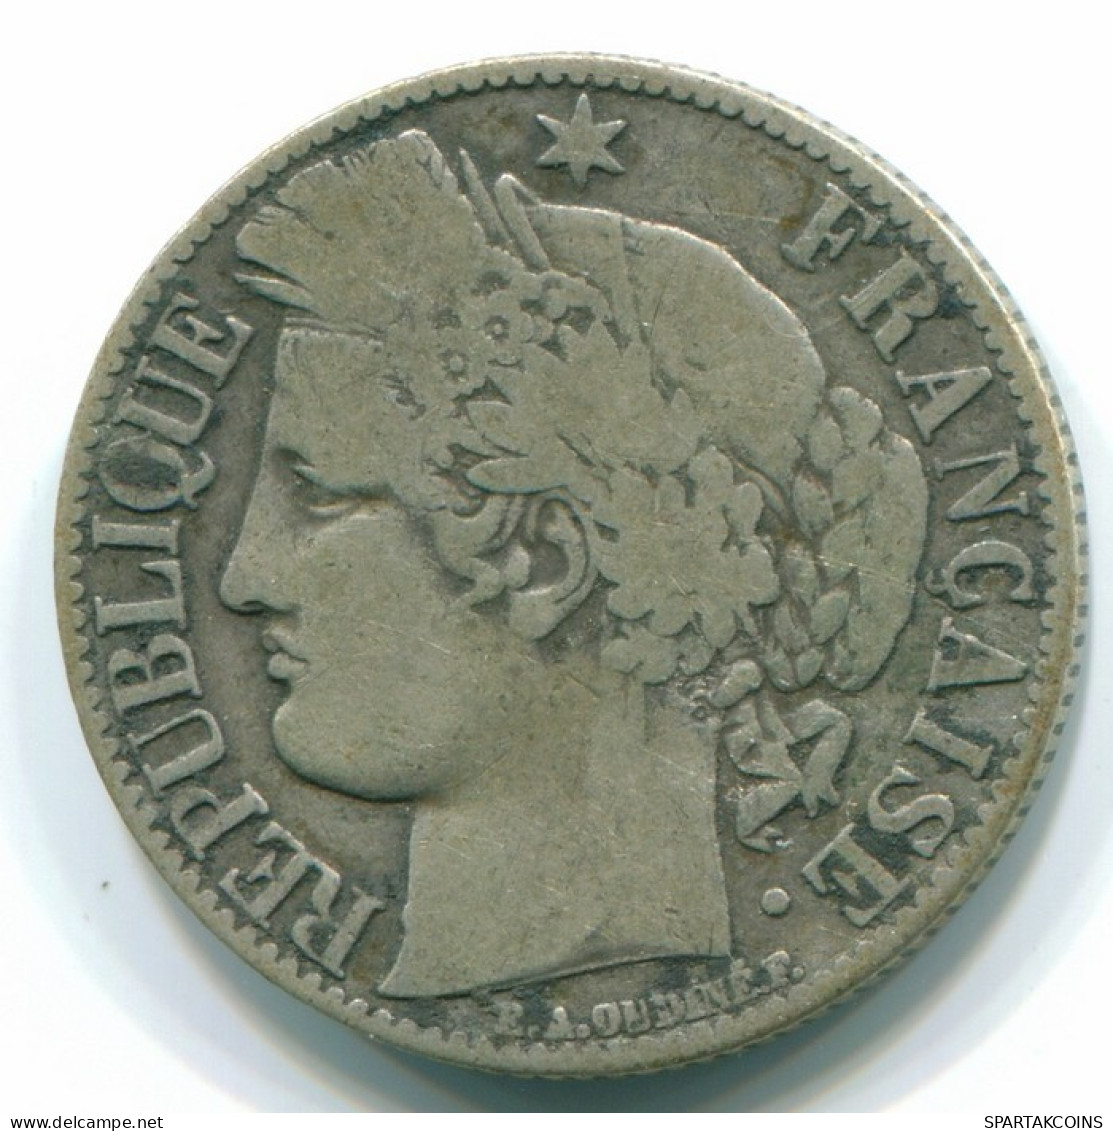 1 FRANC 1872 K FRANCE Coin CERES Silver #FR1173.10.U.A - 1 Franc